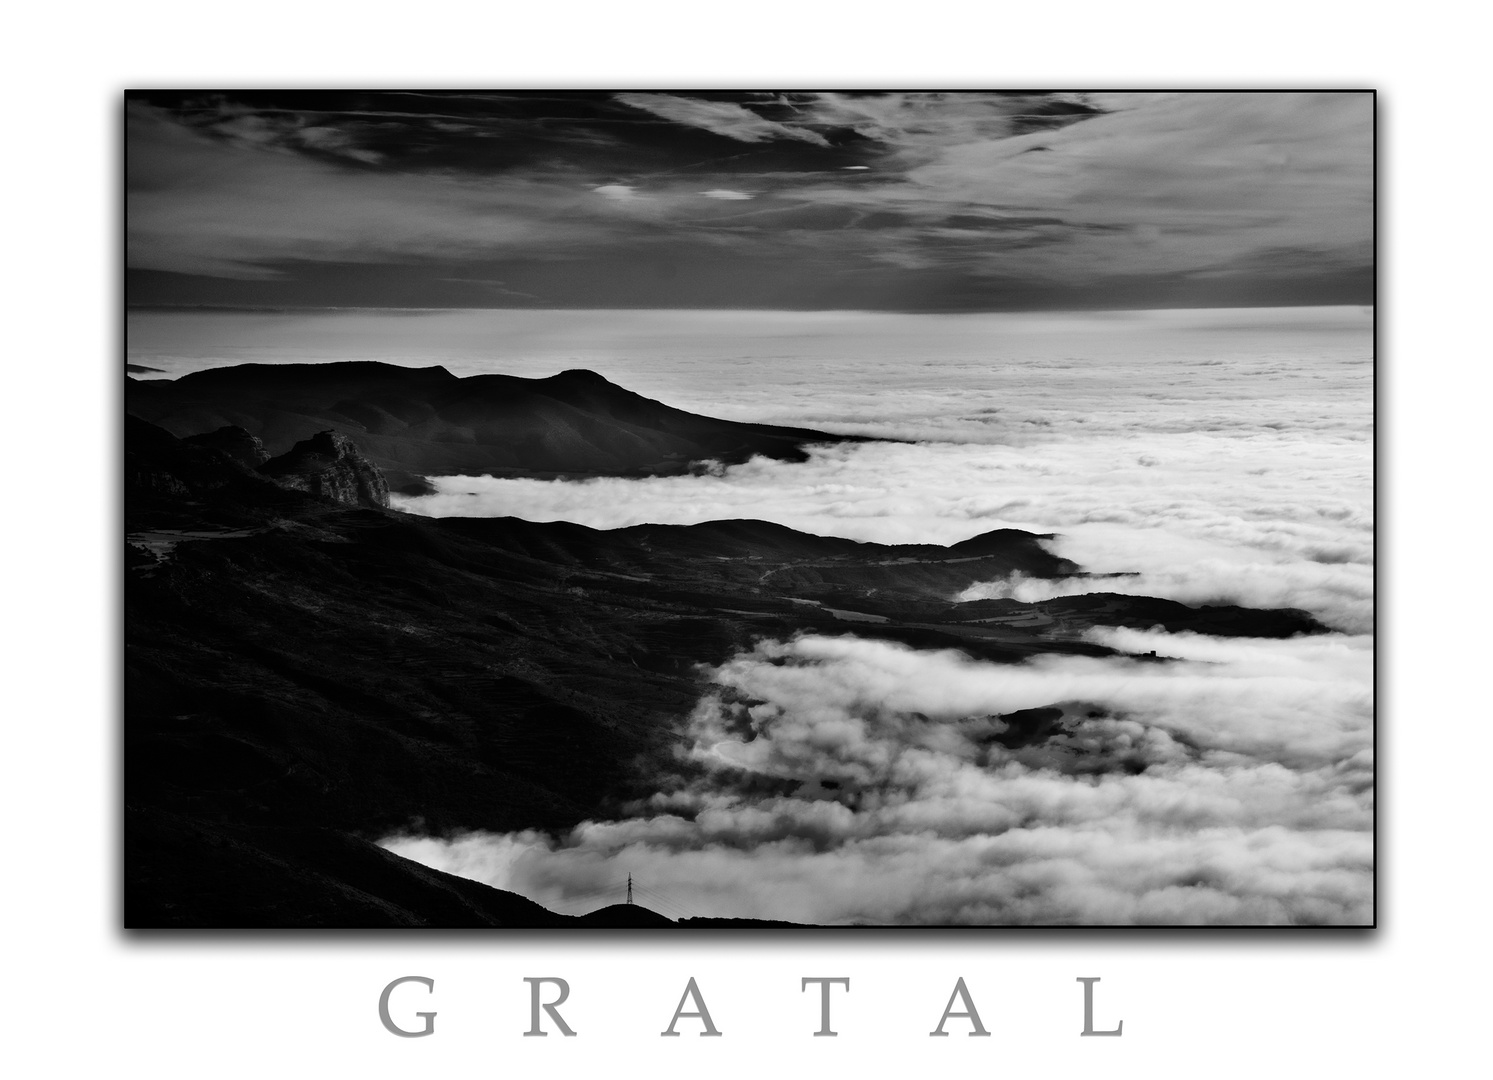 Mar de nubes desde el Gratal